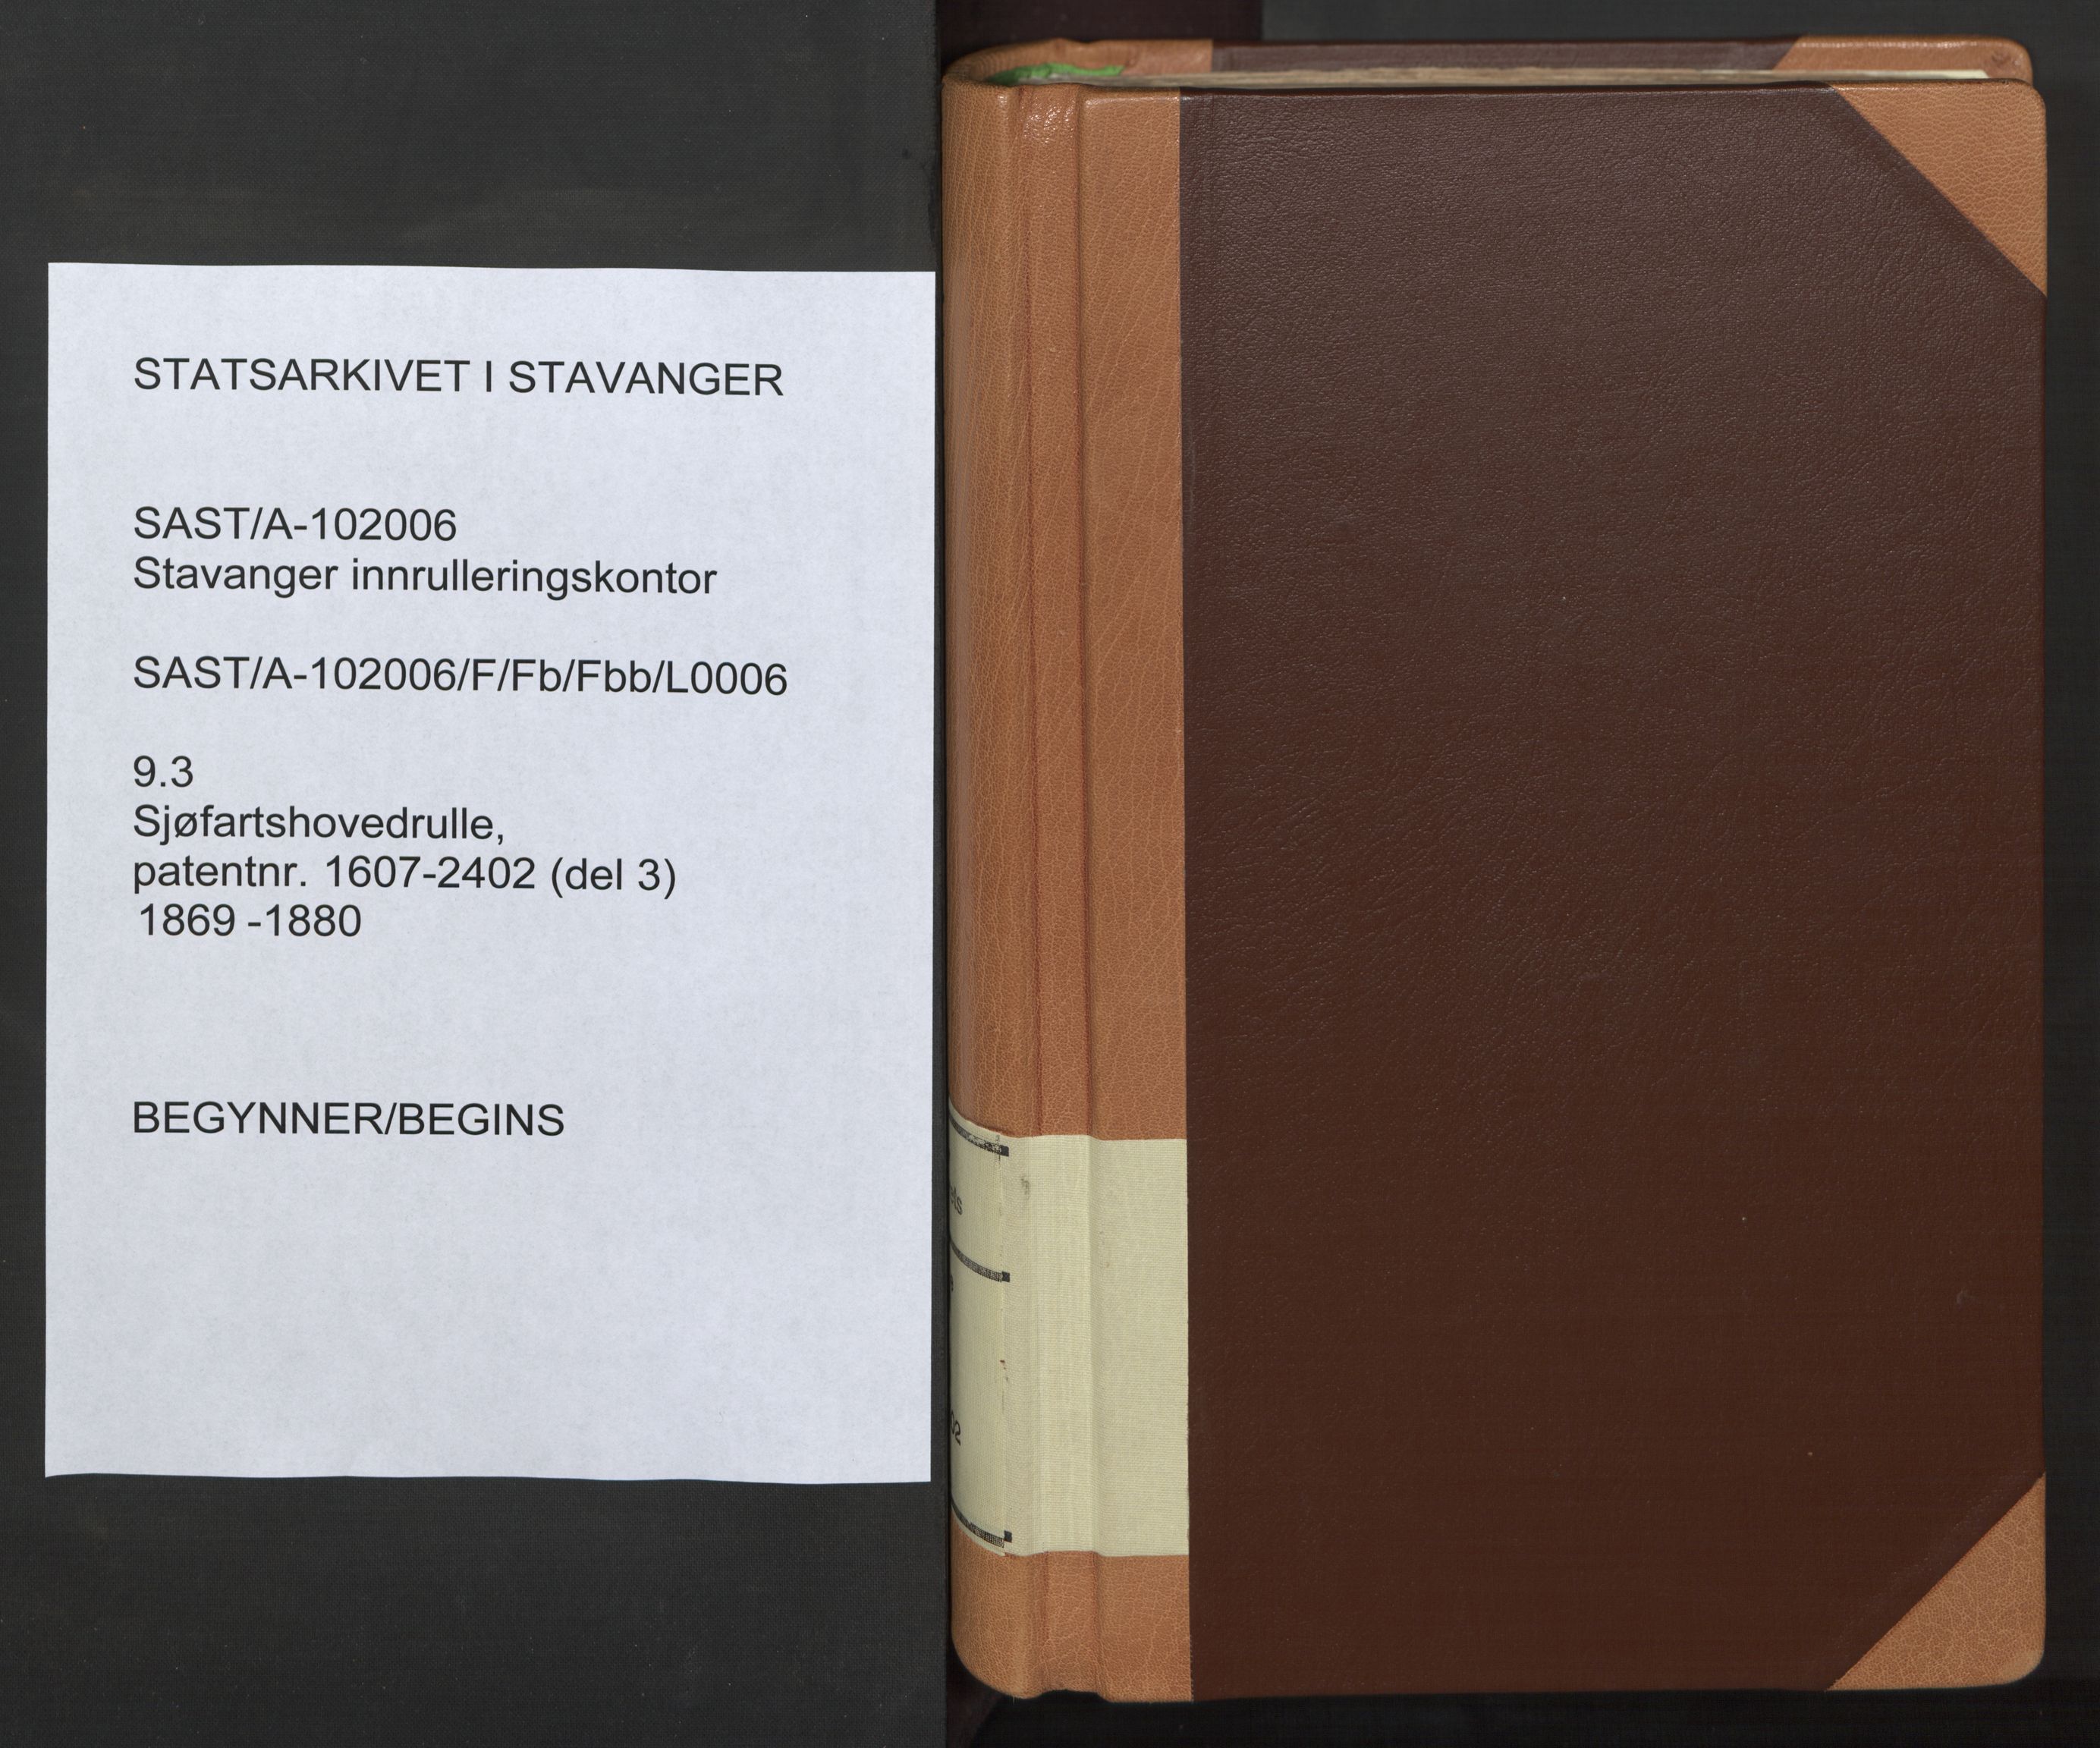 Stavanger sjømannskontor, SAST/A-102006/F/Fb/Fbb/L0006: Sjøfartshovedrulle, patentnr. 1607-2402 (del 3), 1869-1880, p. 1